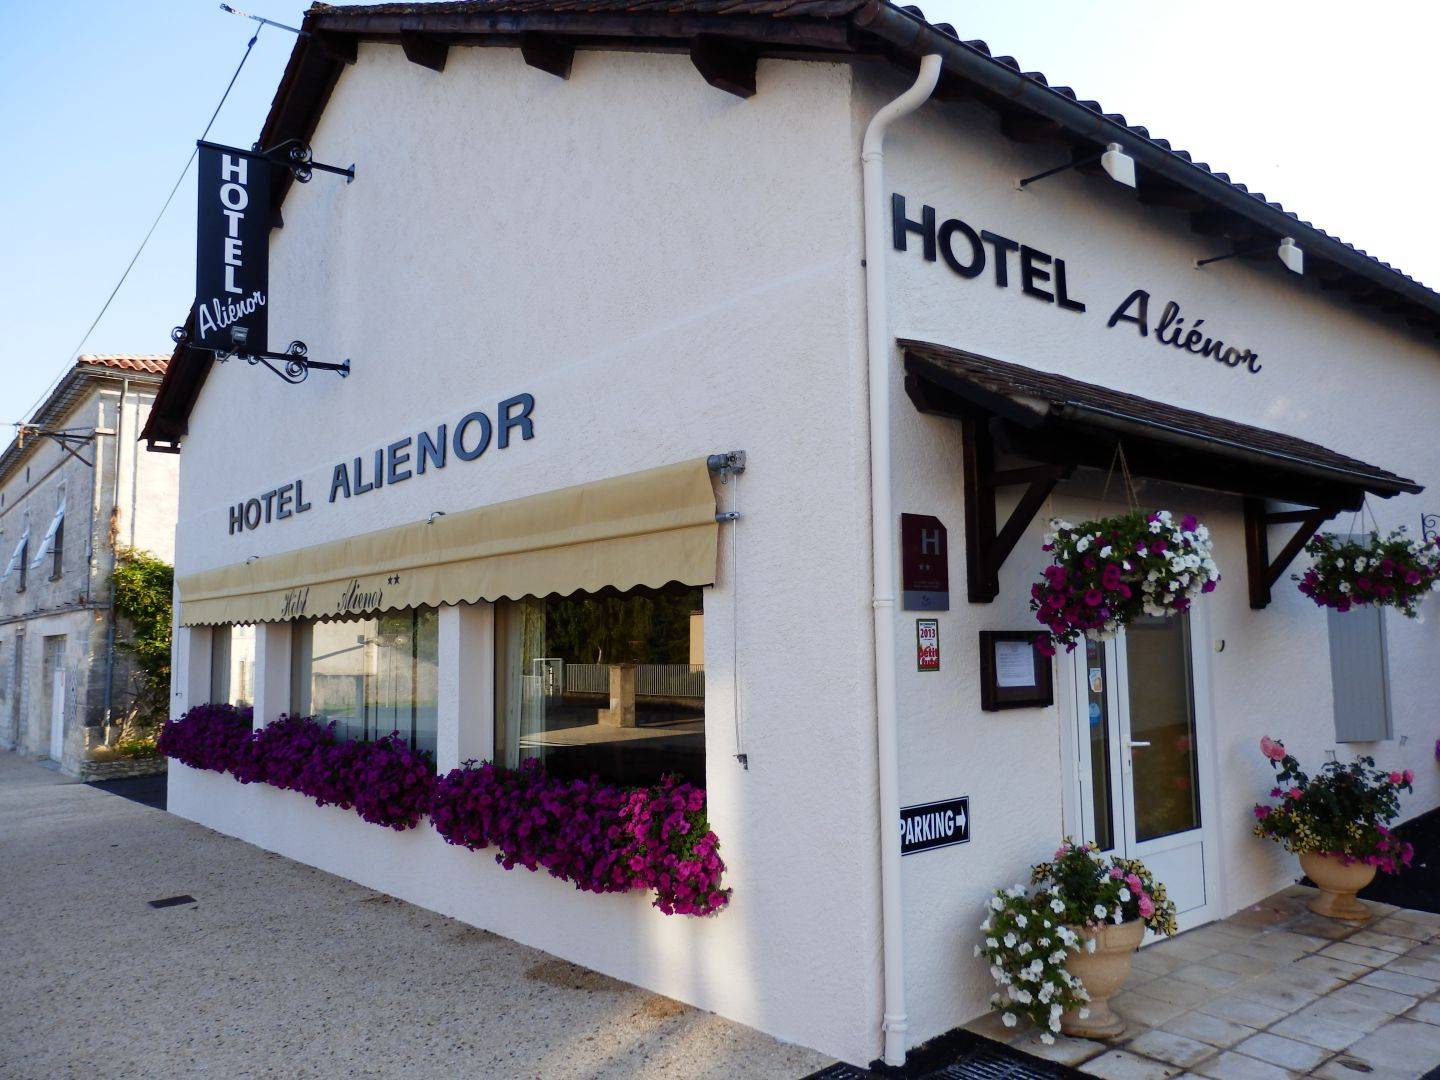 (c) Hotel-alienor-brantome.fr